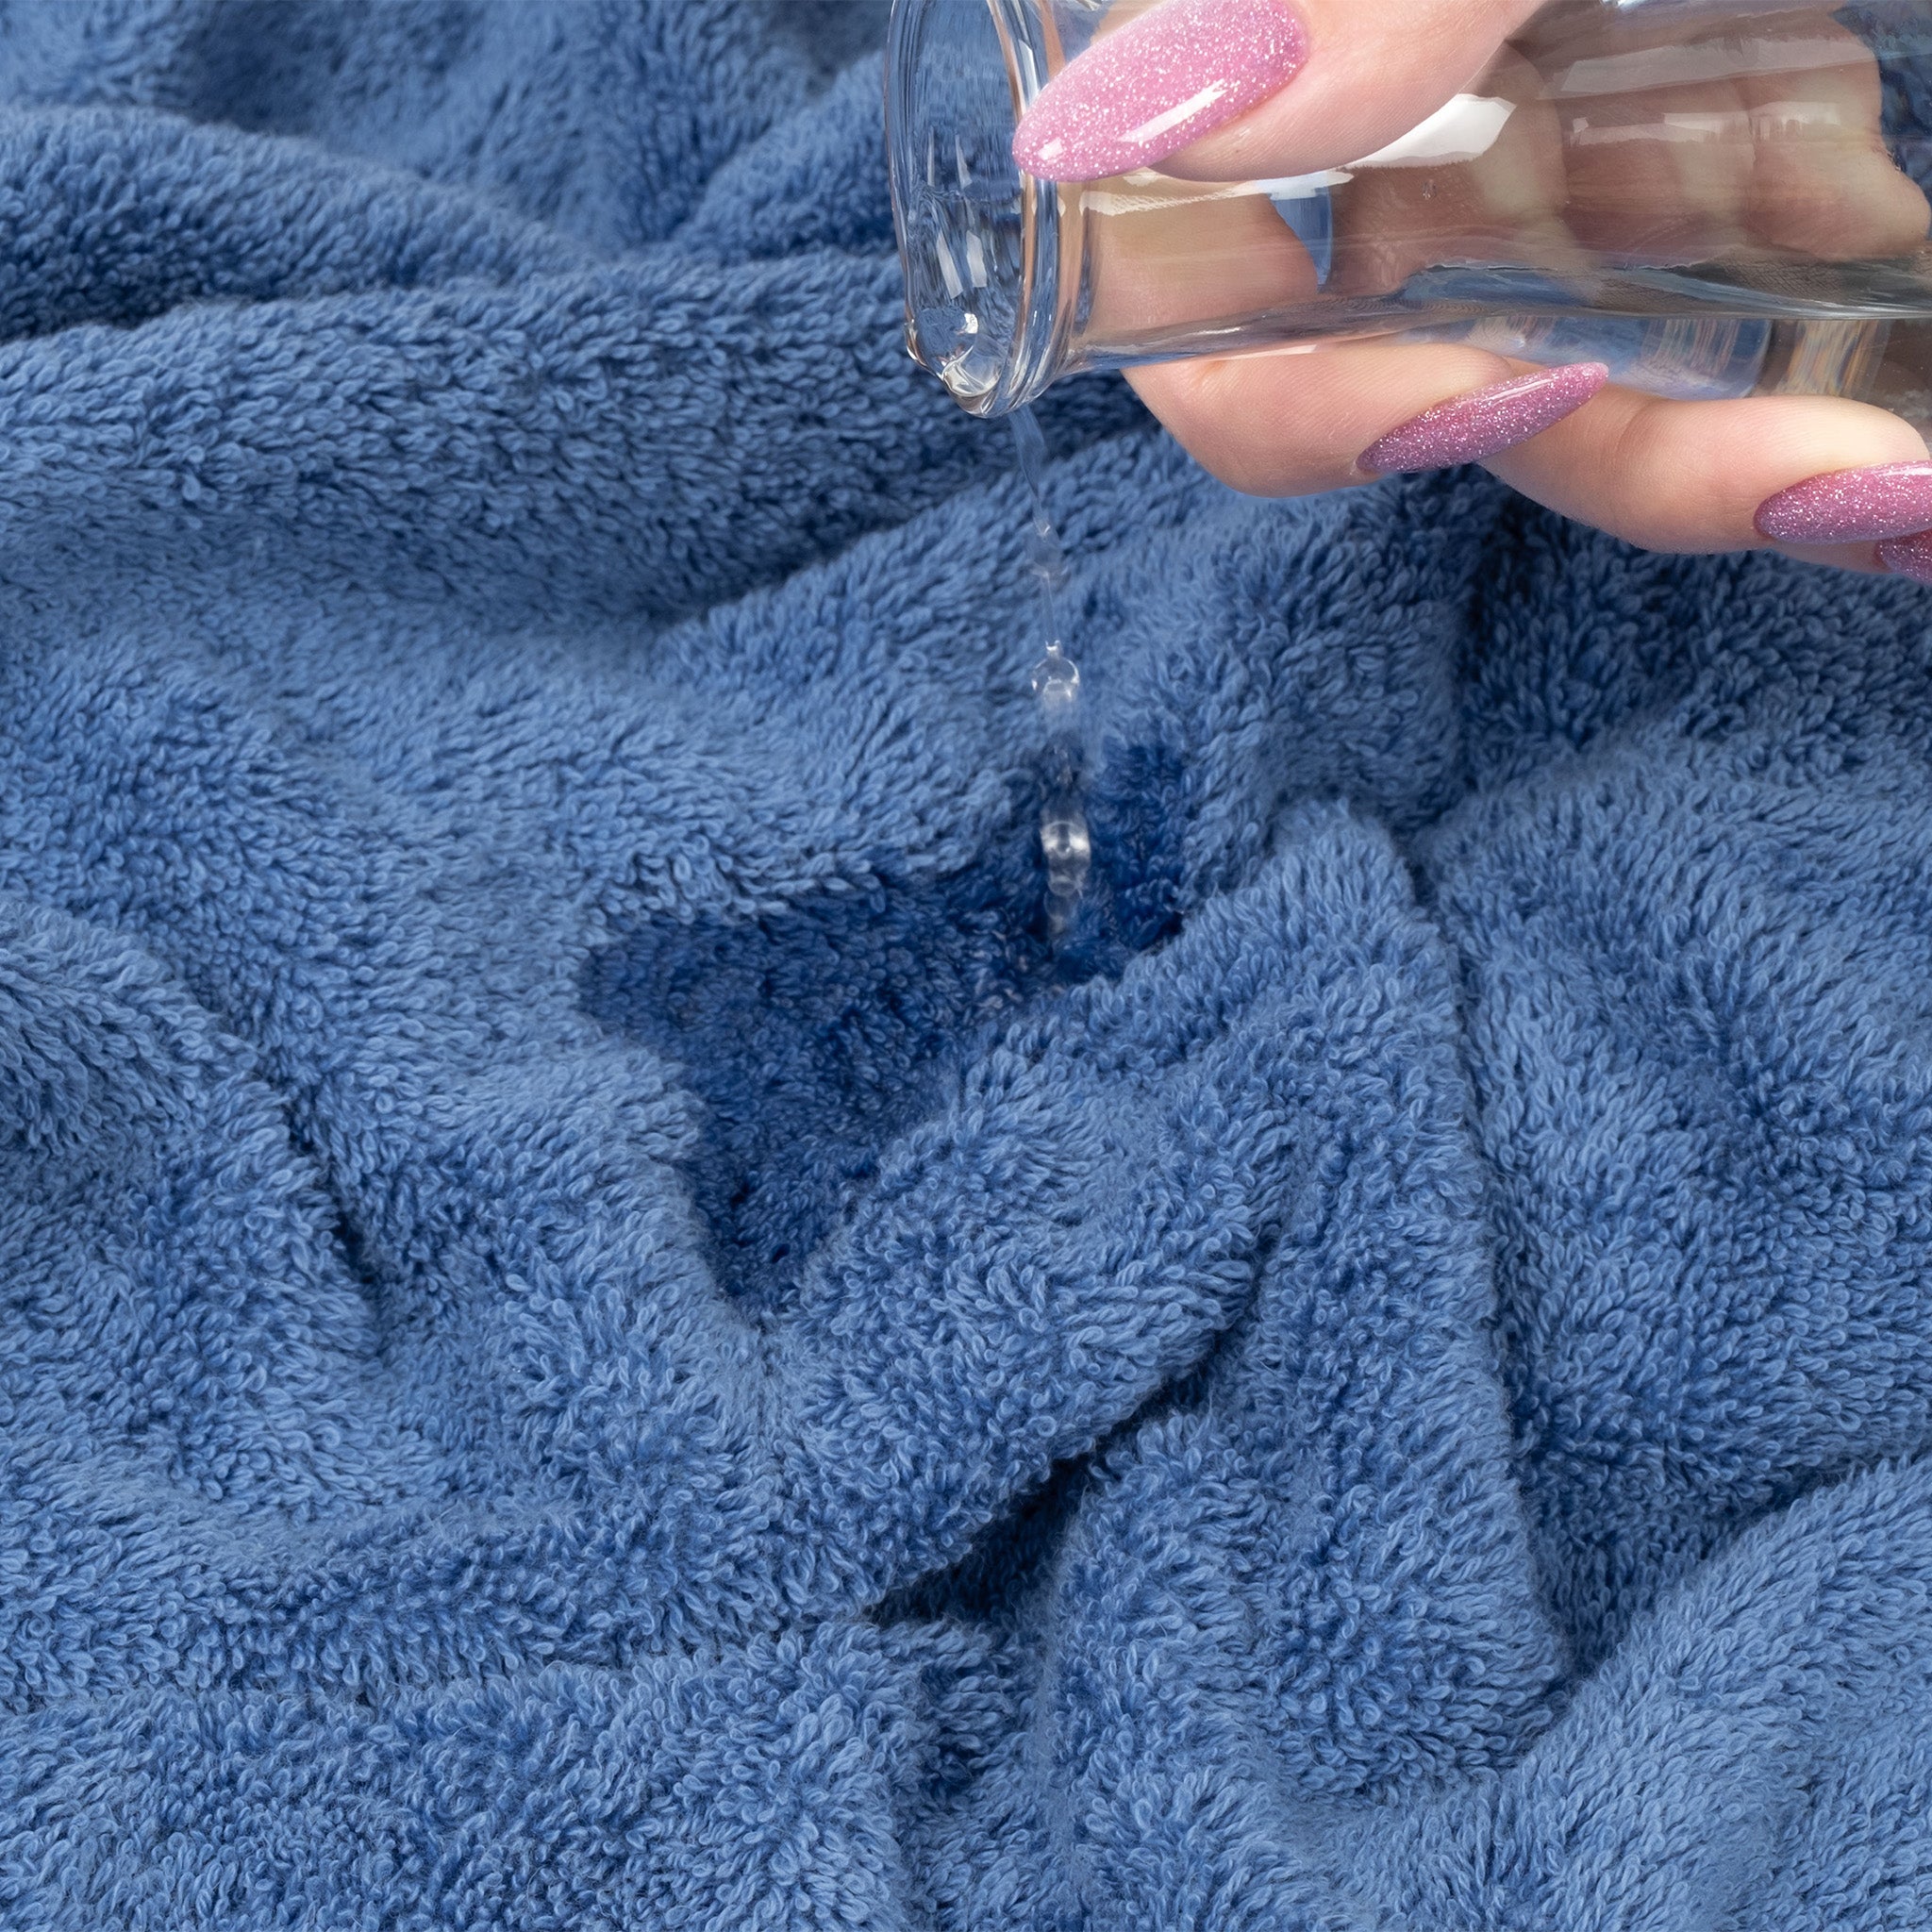 American Soft Linen 100% Turkish Cotton 4 Pack Bath Towel Set Wholesale electric-blue-6